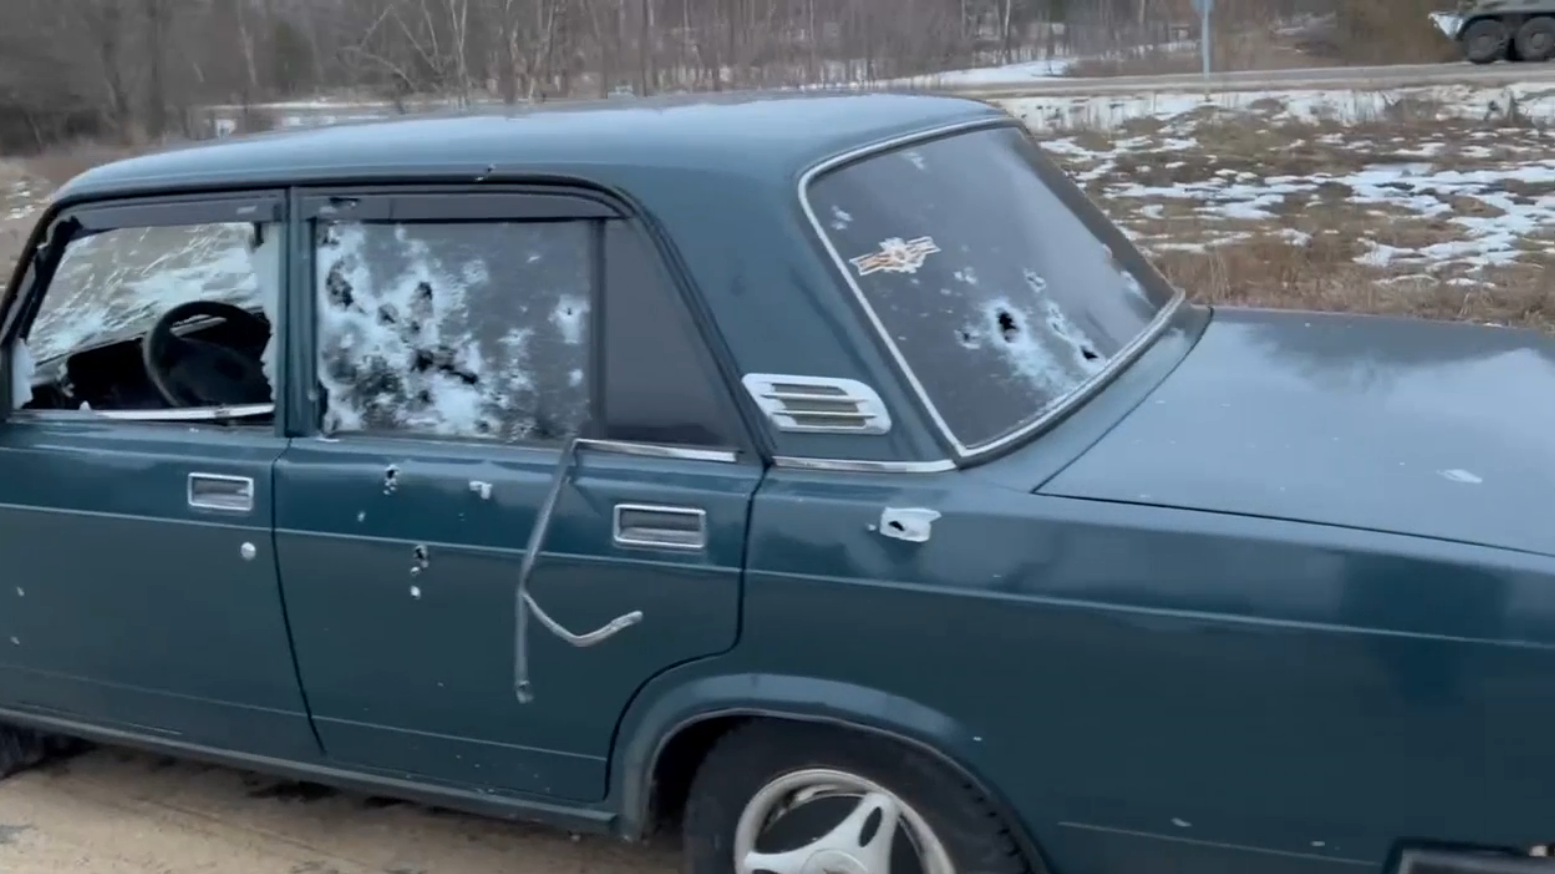 ФСБ показала видео с расстрелянной машиной в Брянской области